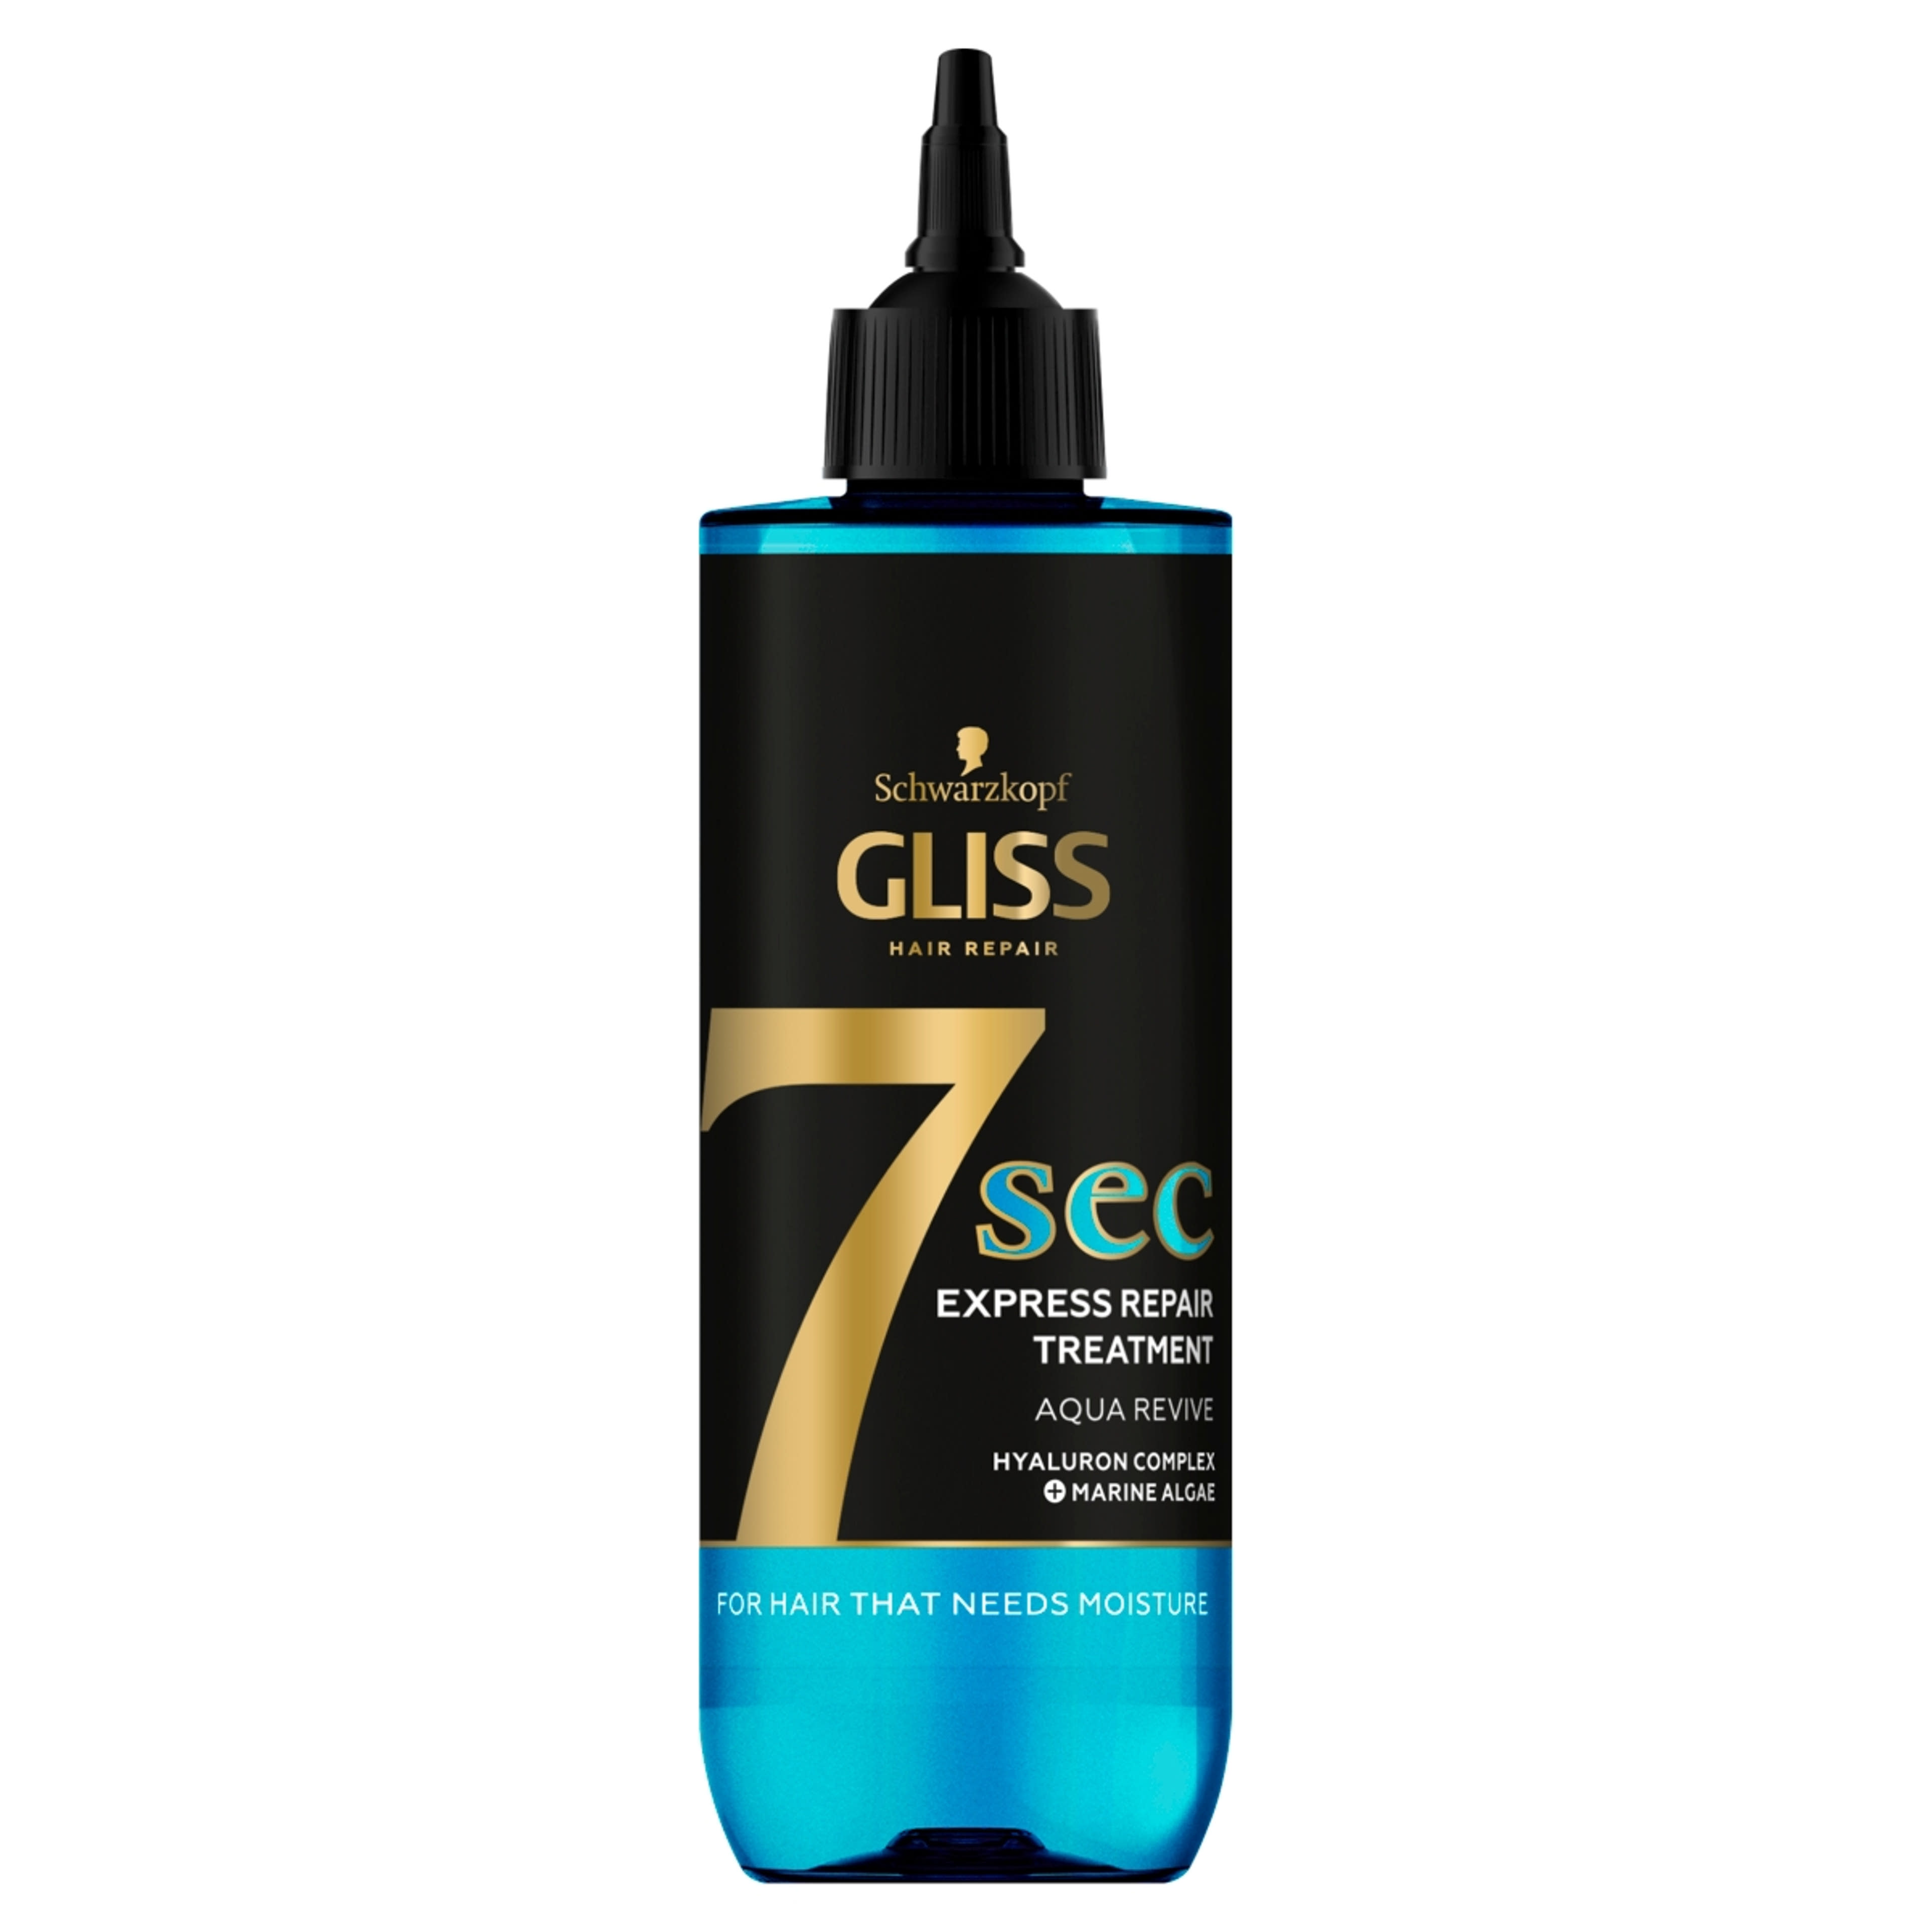 Gliss 7seconds Express Repair Aqua Revive hajpakolás - 200 ml